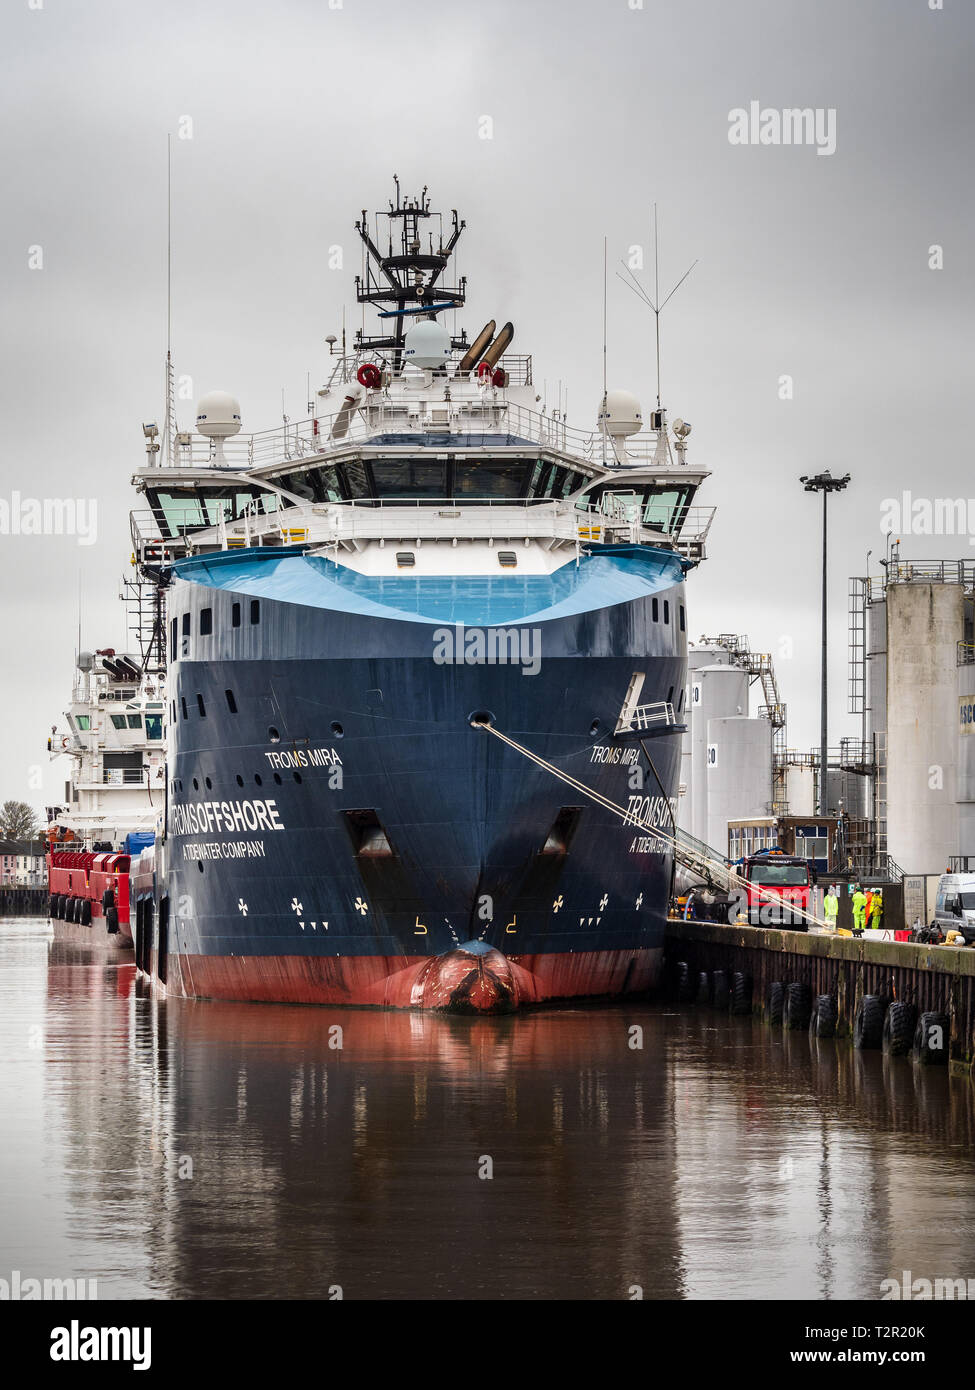 Troms Mira Offshore Tug Supply Ship / buque de apoyo amarrado en el puerto de Great Yarmouth Foto de stock